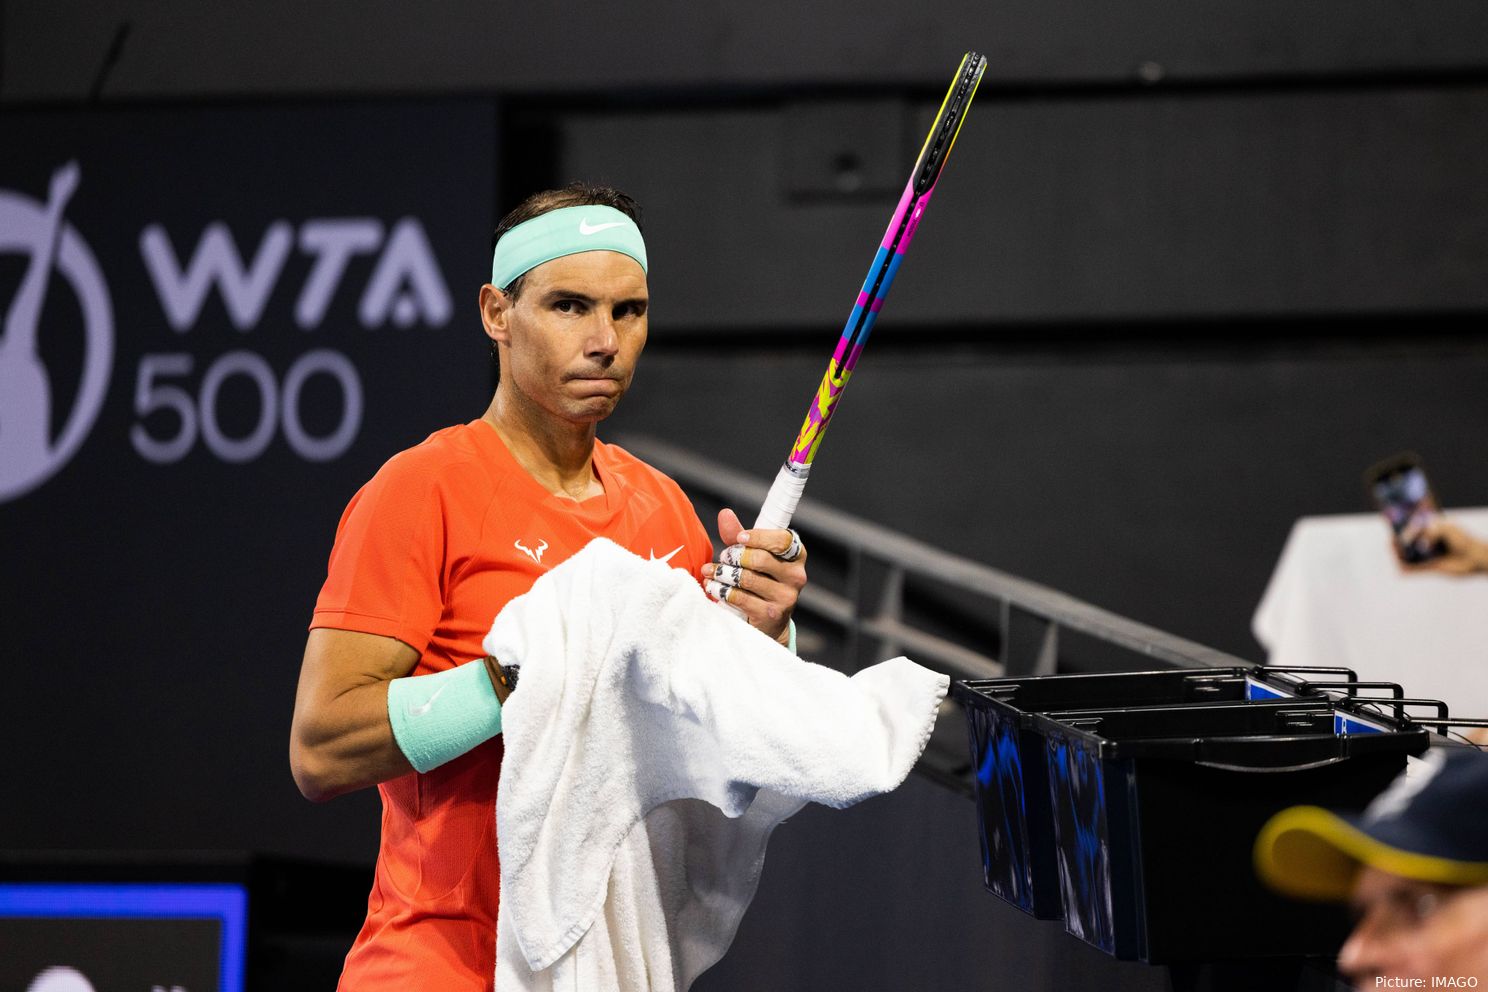 Rafael Nadal próximo da reforma, diz Andy Roddick: "Roger Federer queria dizer 'adeus', isso aconteceu em três dias"